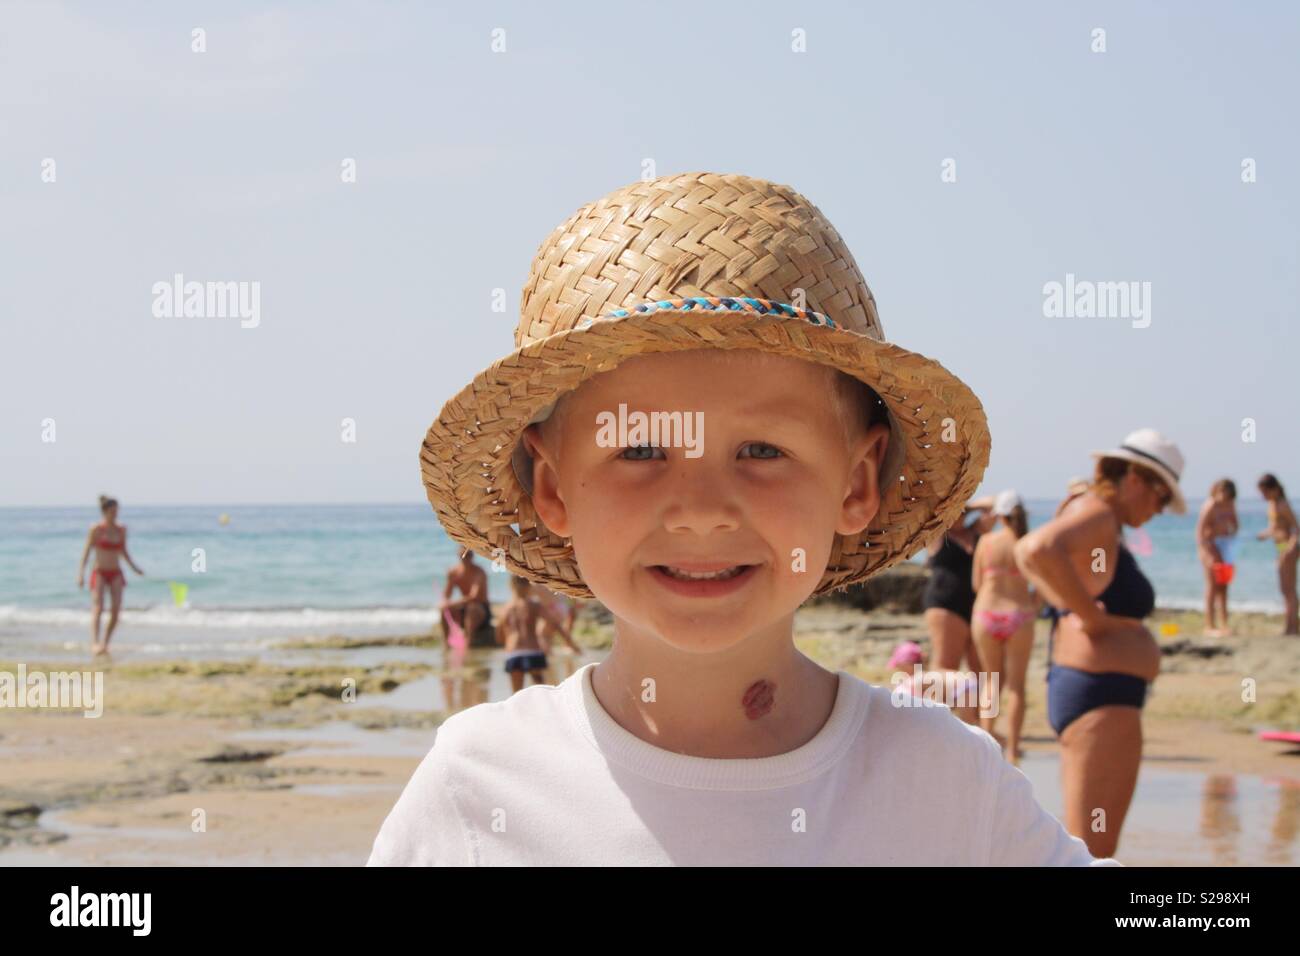 Junge trägt einen Strohhut auf einem Strand Stockfoto